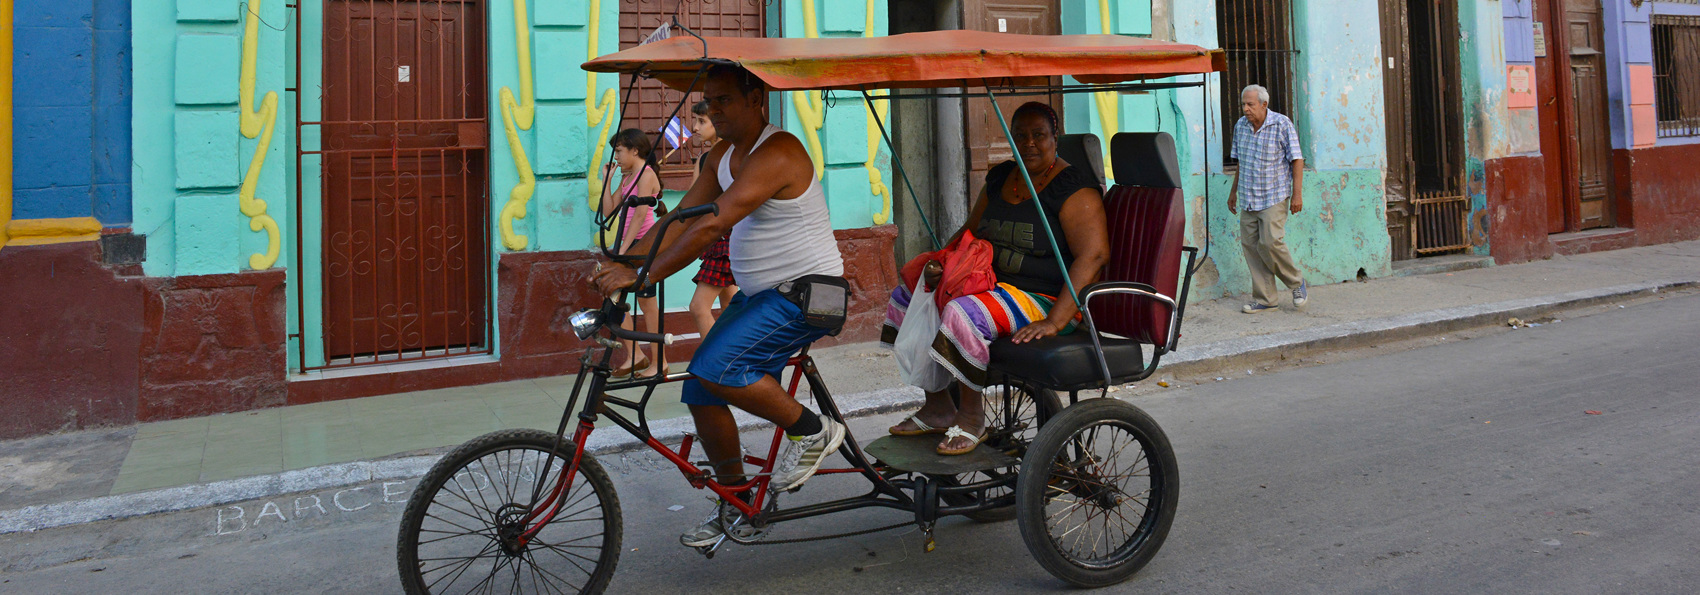 cuba - havana cykeltaxa